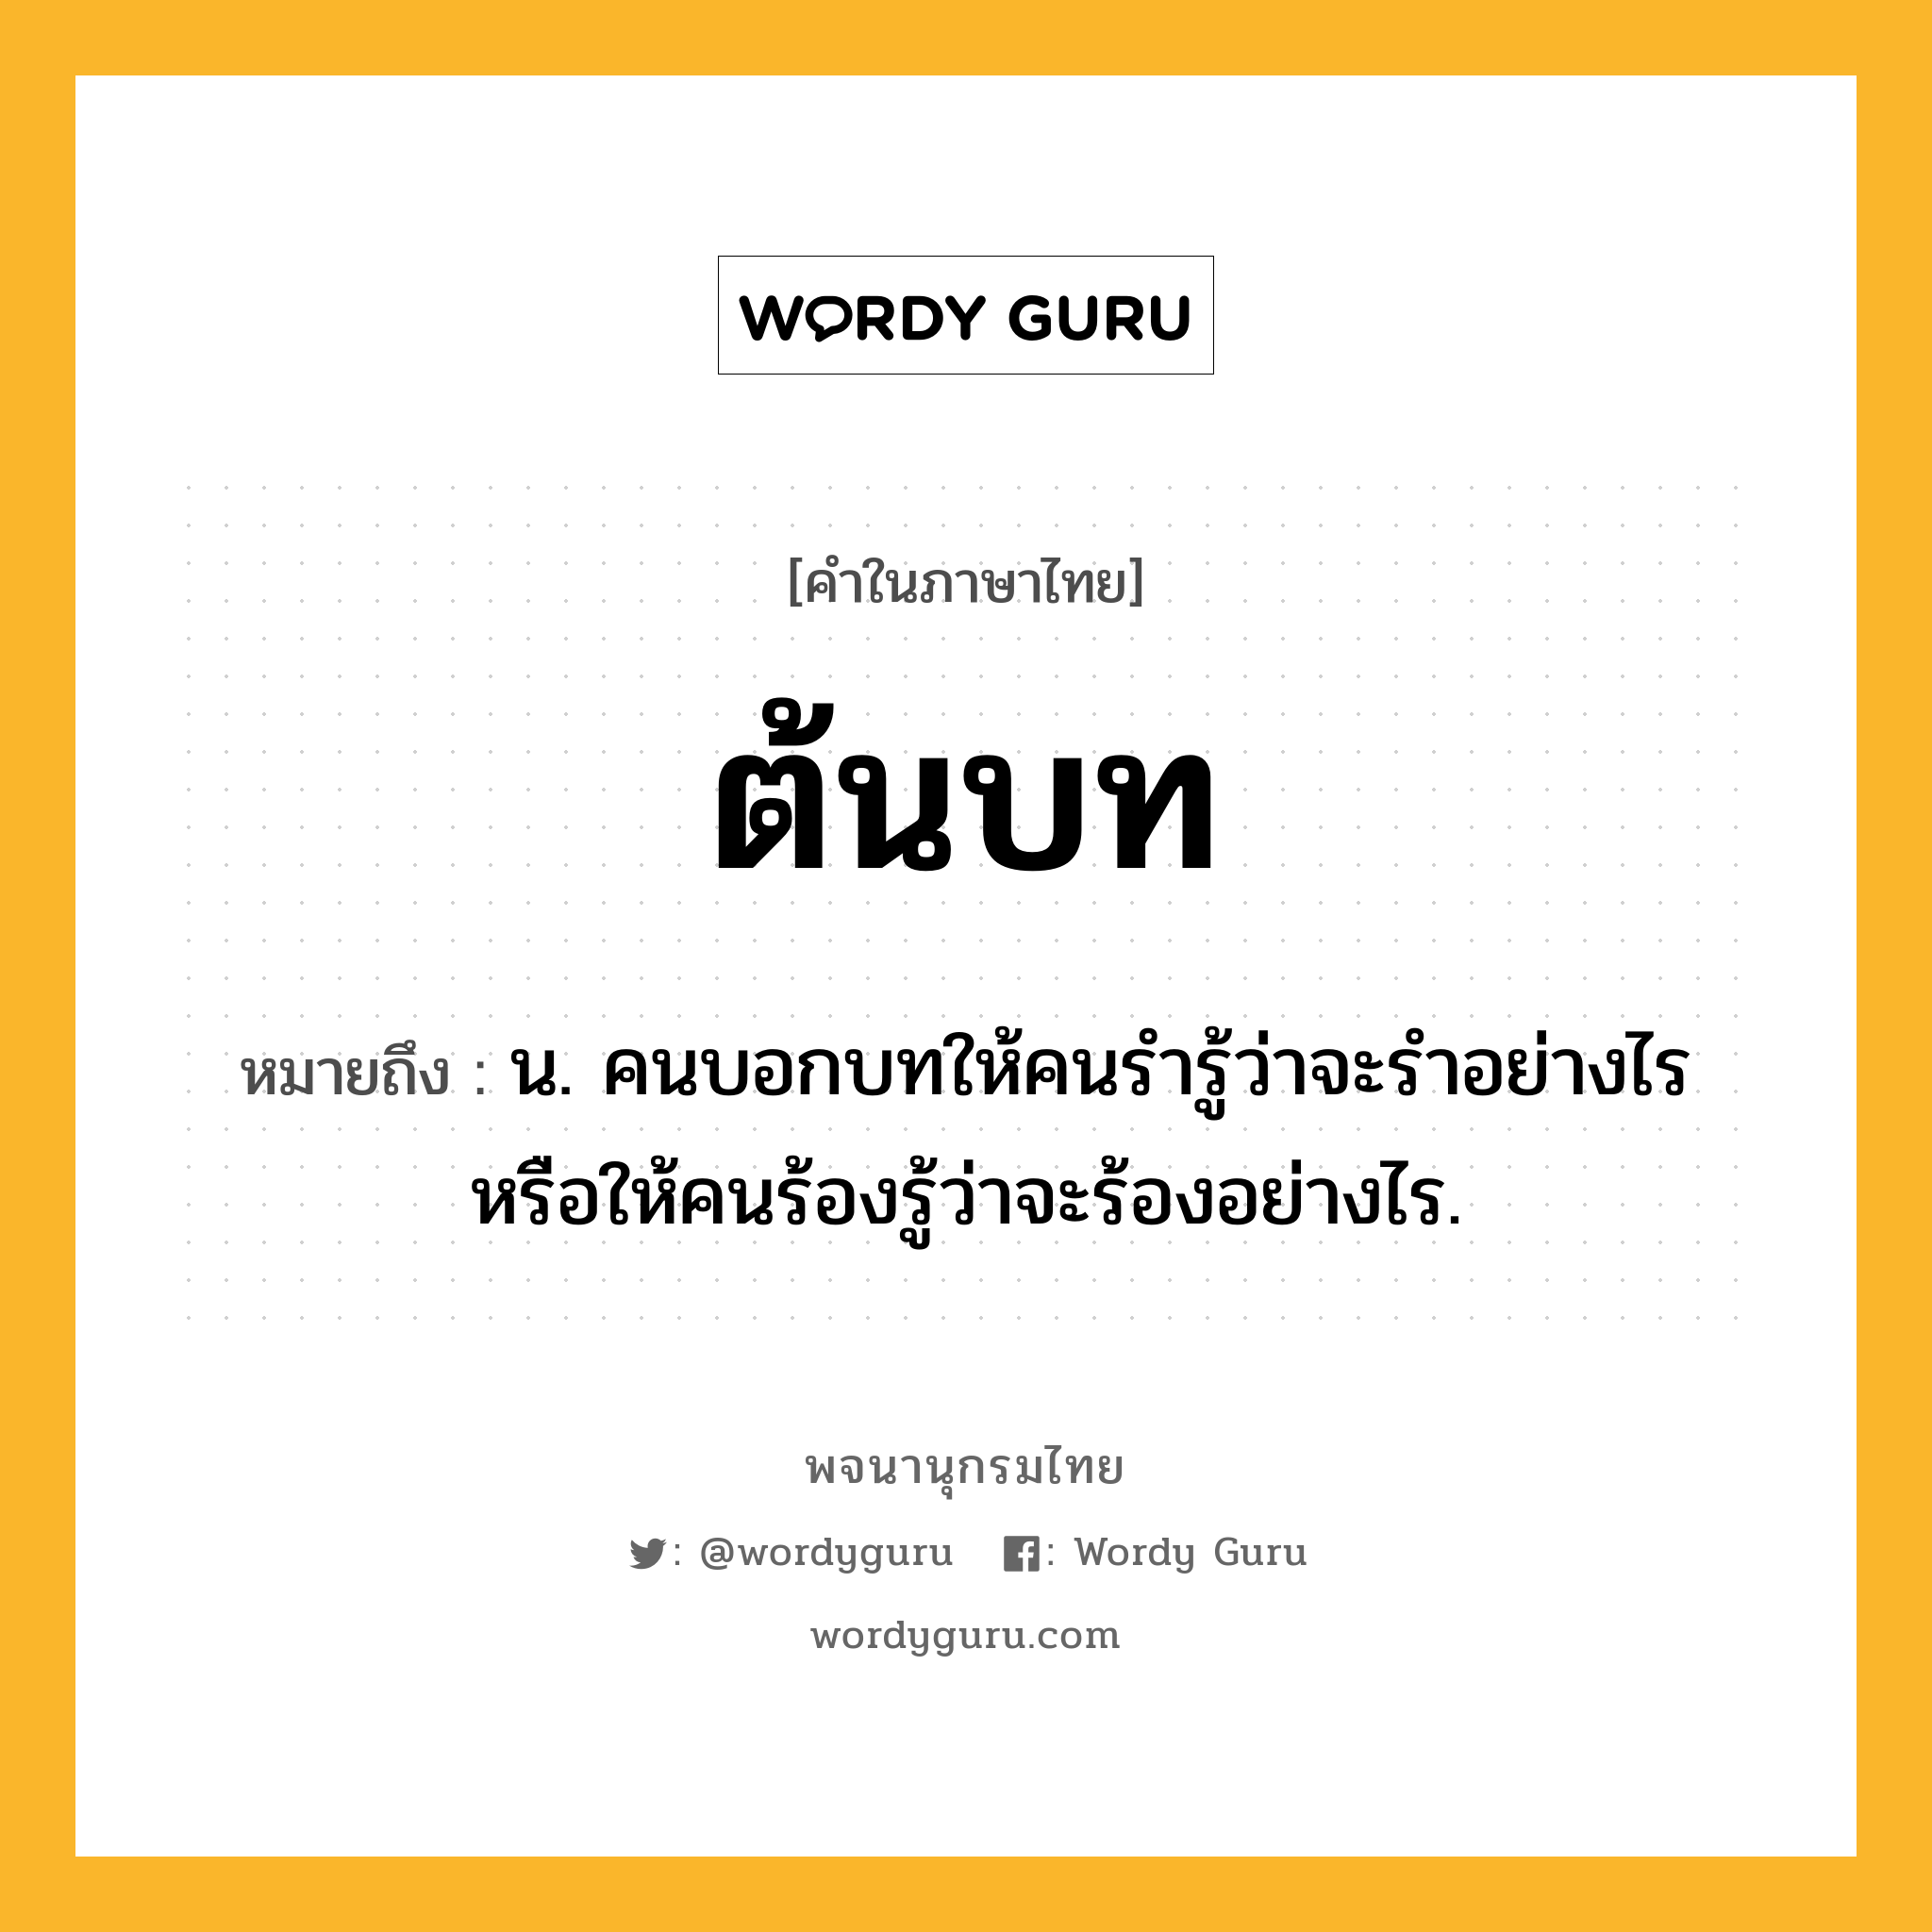 ต้นบท หมายถึงอะไร?, คำในภาษาไทย ต้นบท หมายถึง น. คนบอกบทให้คนรํารู้ว่าจะรําอย่างไร หรือให้คนร้องรู้ว่าจะร้องอย่างไร.